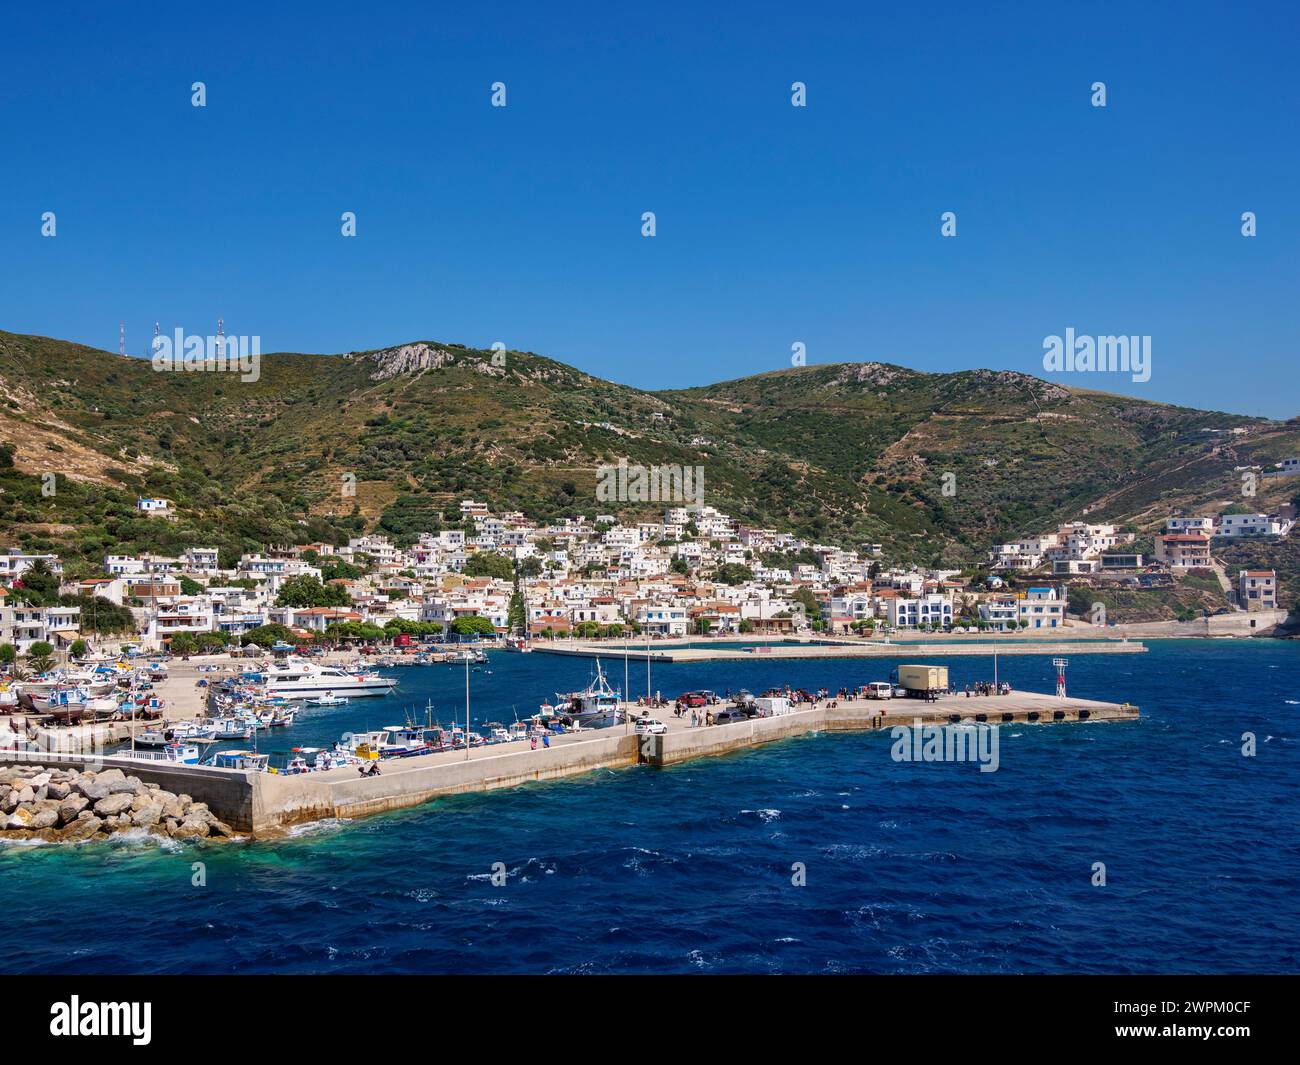 Porto di Fournoi, isola di Fournoi, Egeo settentrionale, isole greche, Grecia, Europa Foto Stock